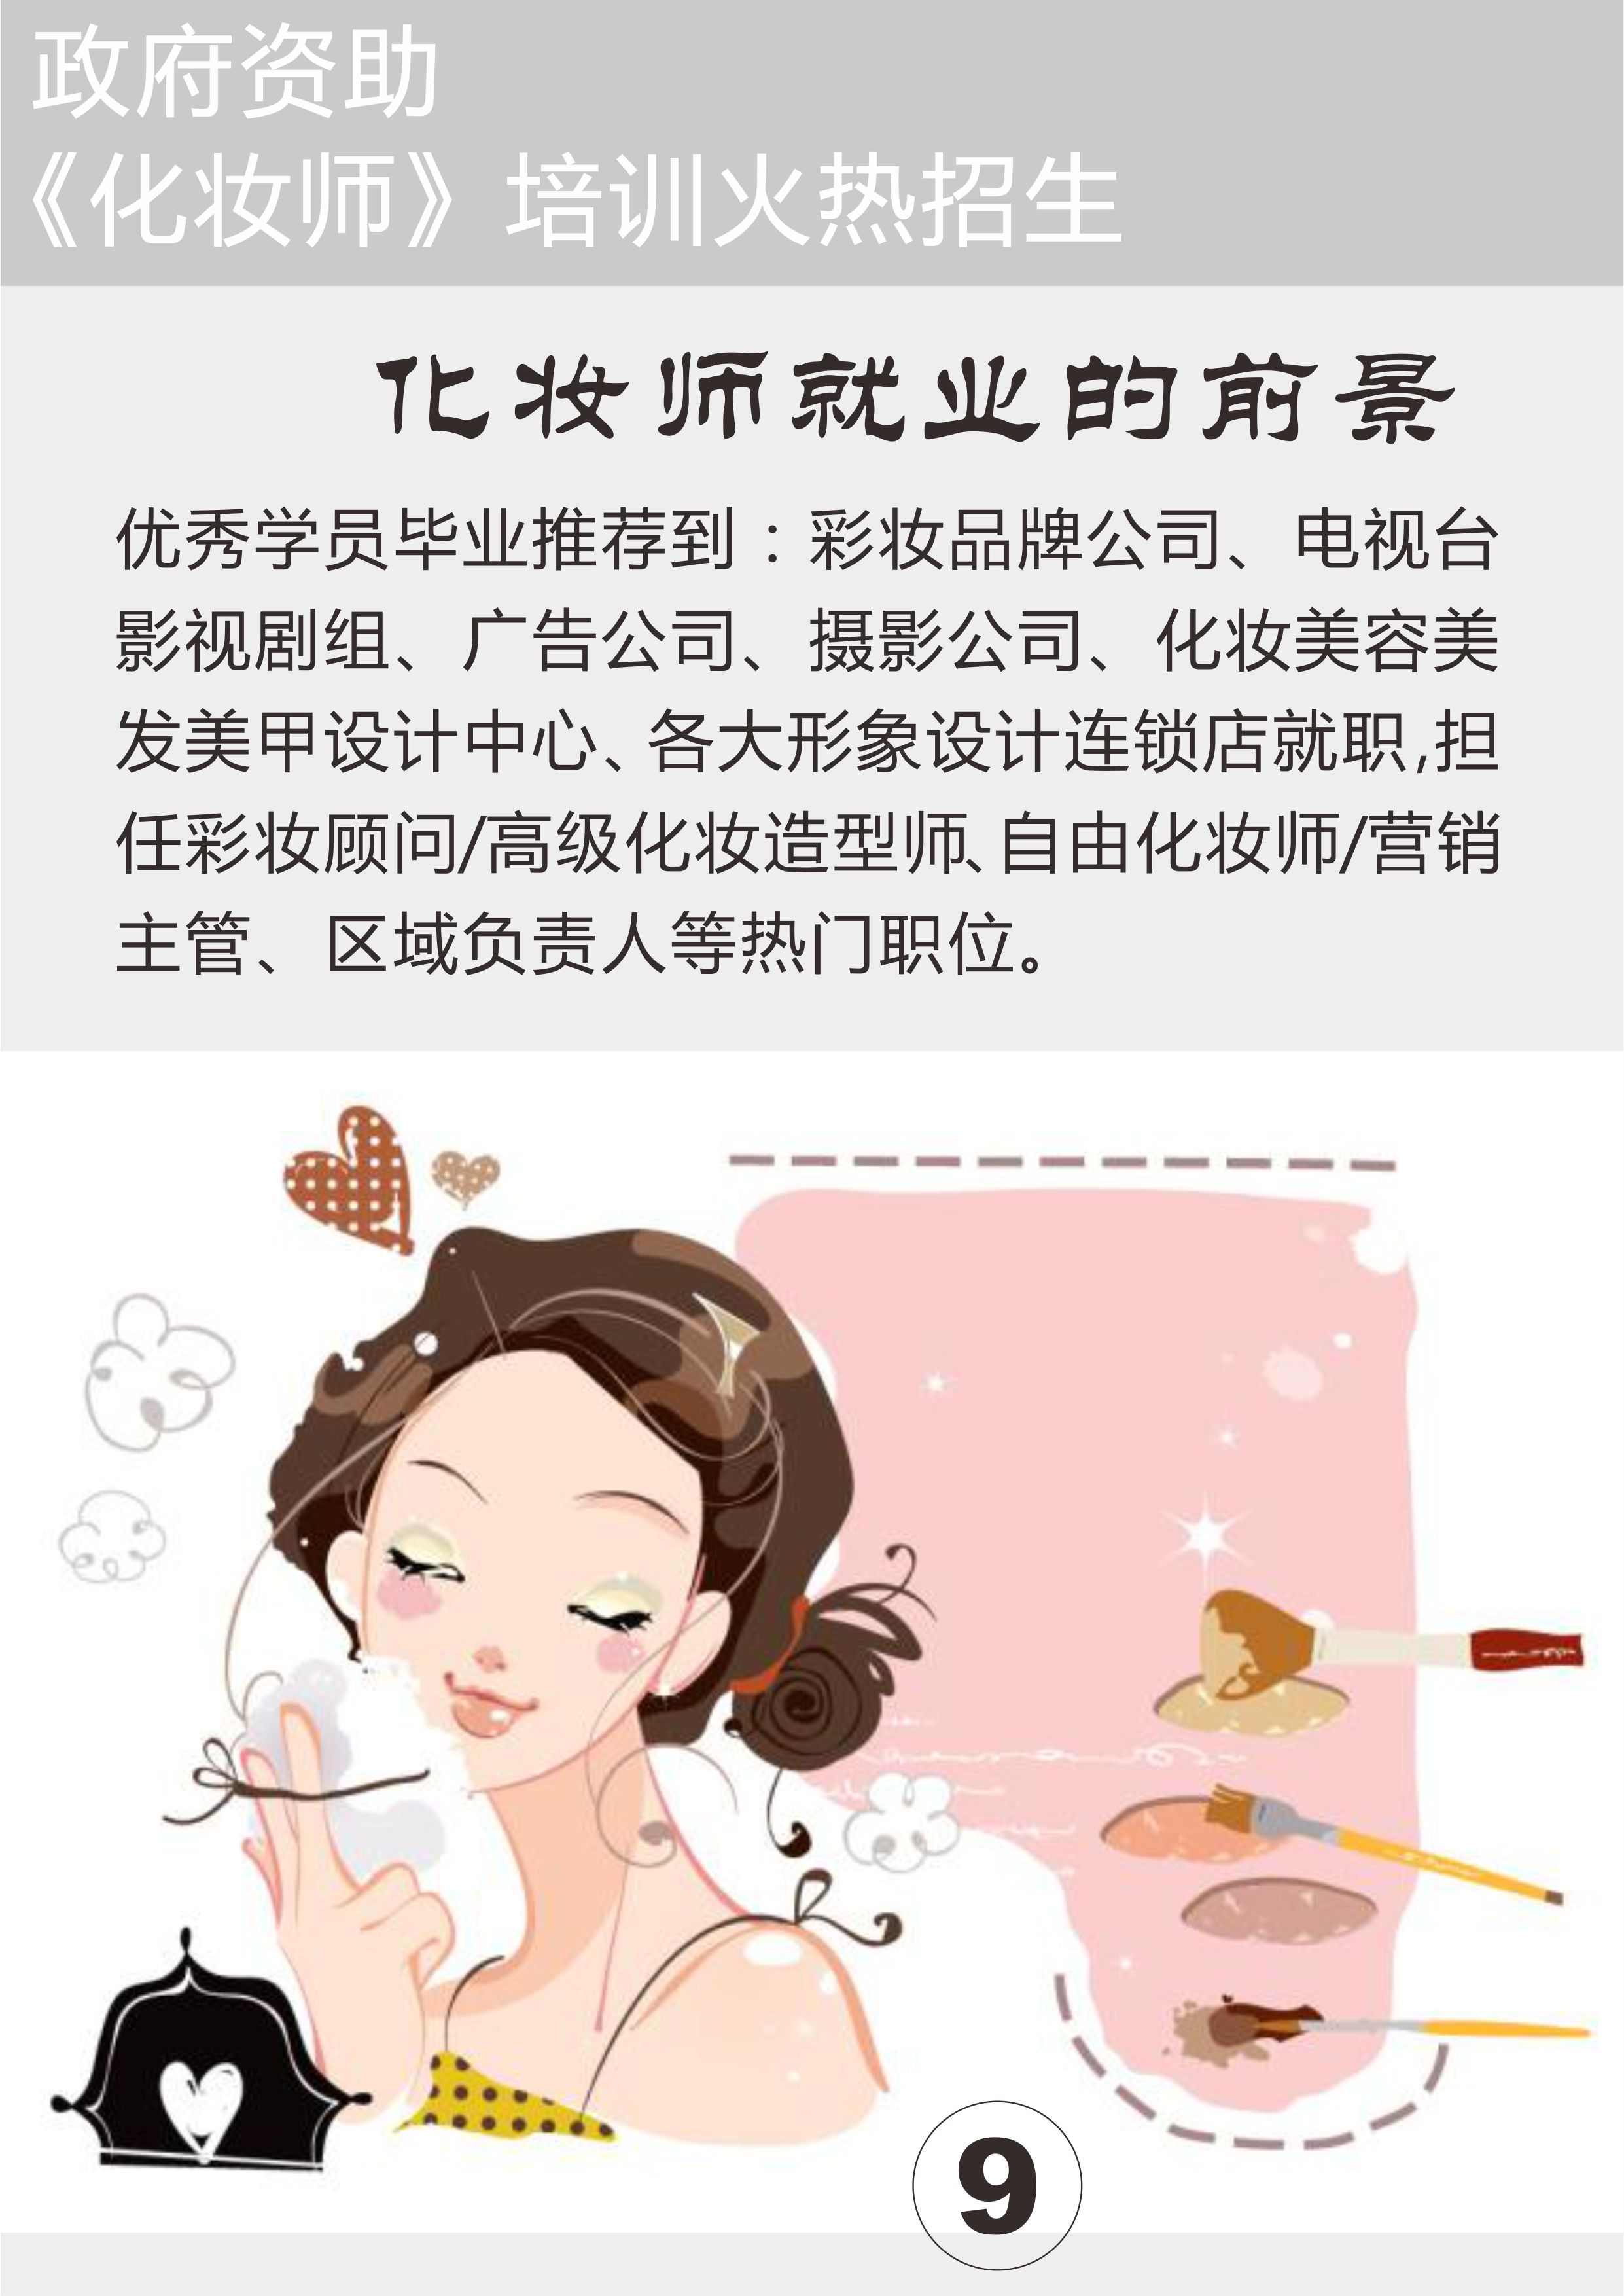 广州化妆师训要多少钱 免费培训学校 国家补贴 政府支持